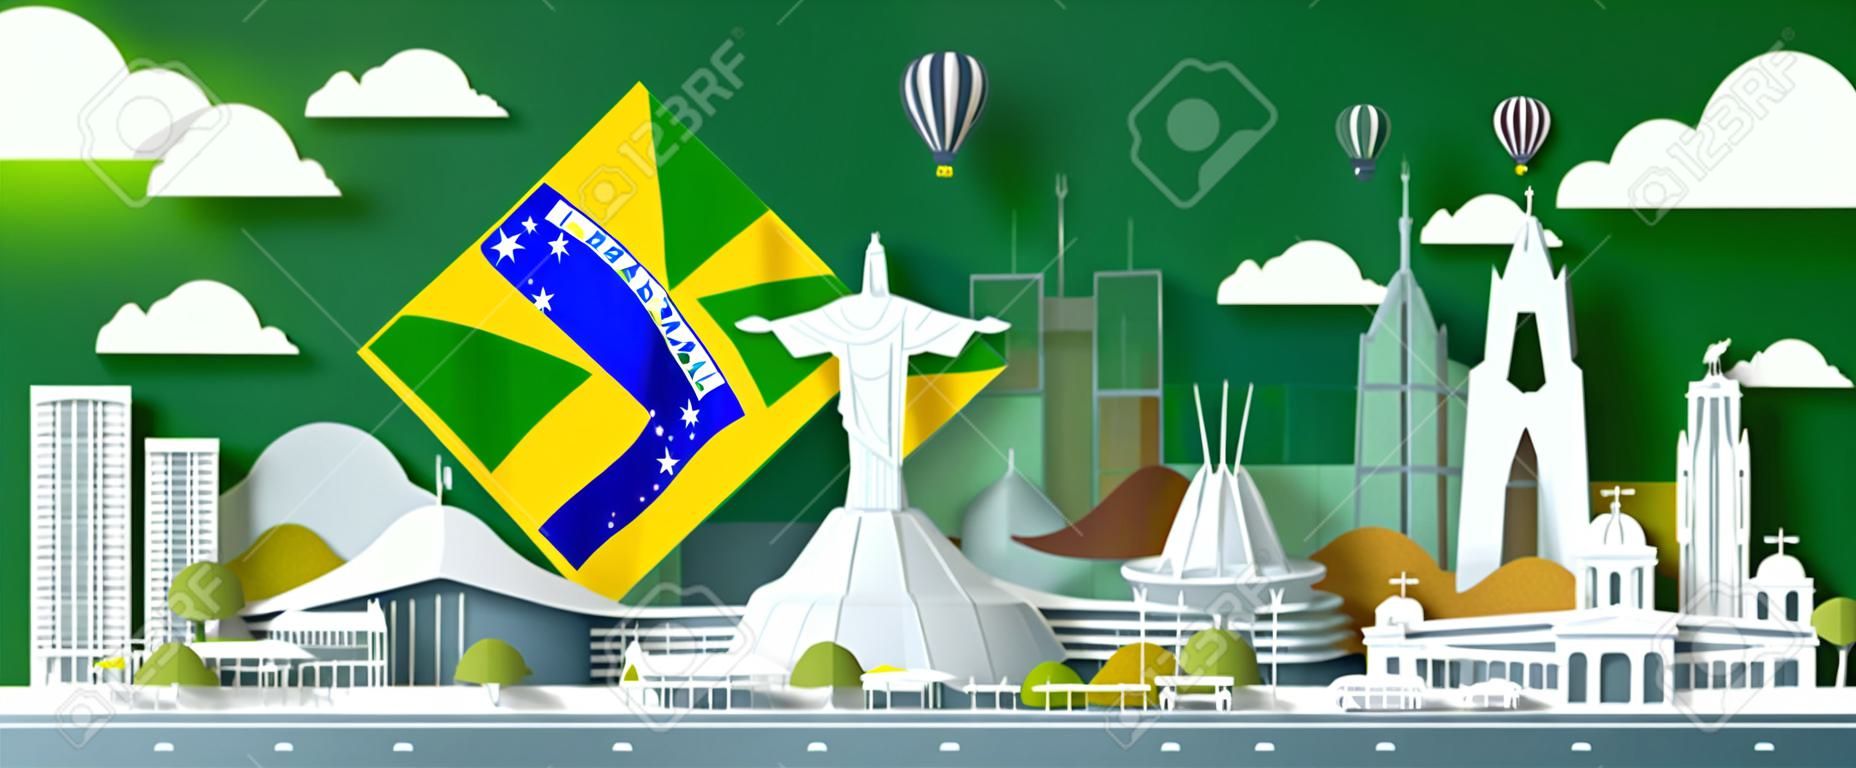 Punkt orientacyjny ilustracja obchody rocznicy dzień brazylii z tłem zielonej flagi. zabytki podróży architektura miejska brazylii w de janeiro w sztuce papierowej, styl cięcia papieru. ilustracja wektorowa